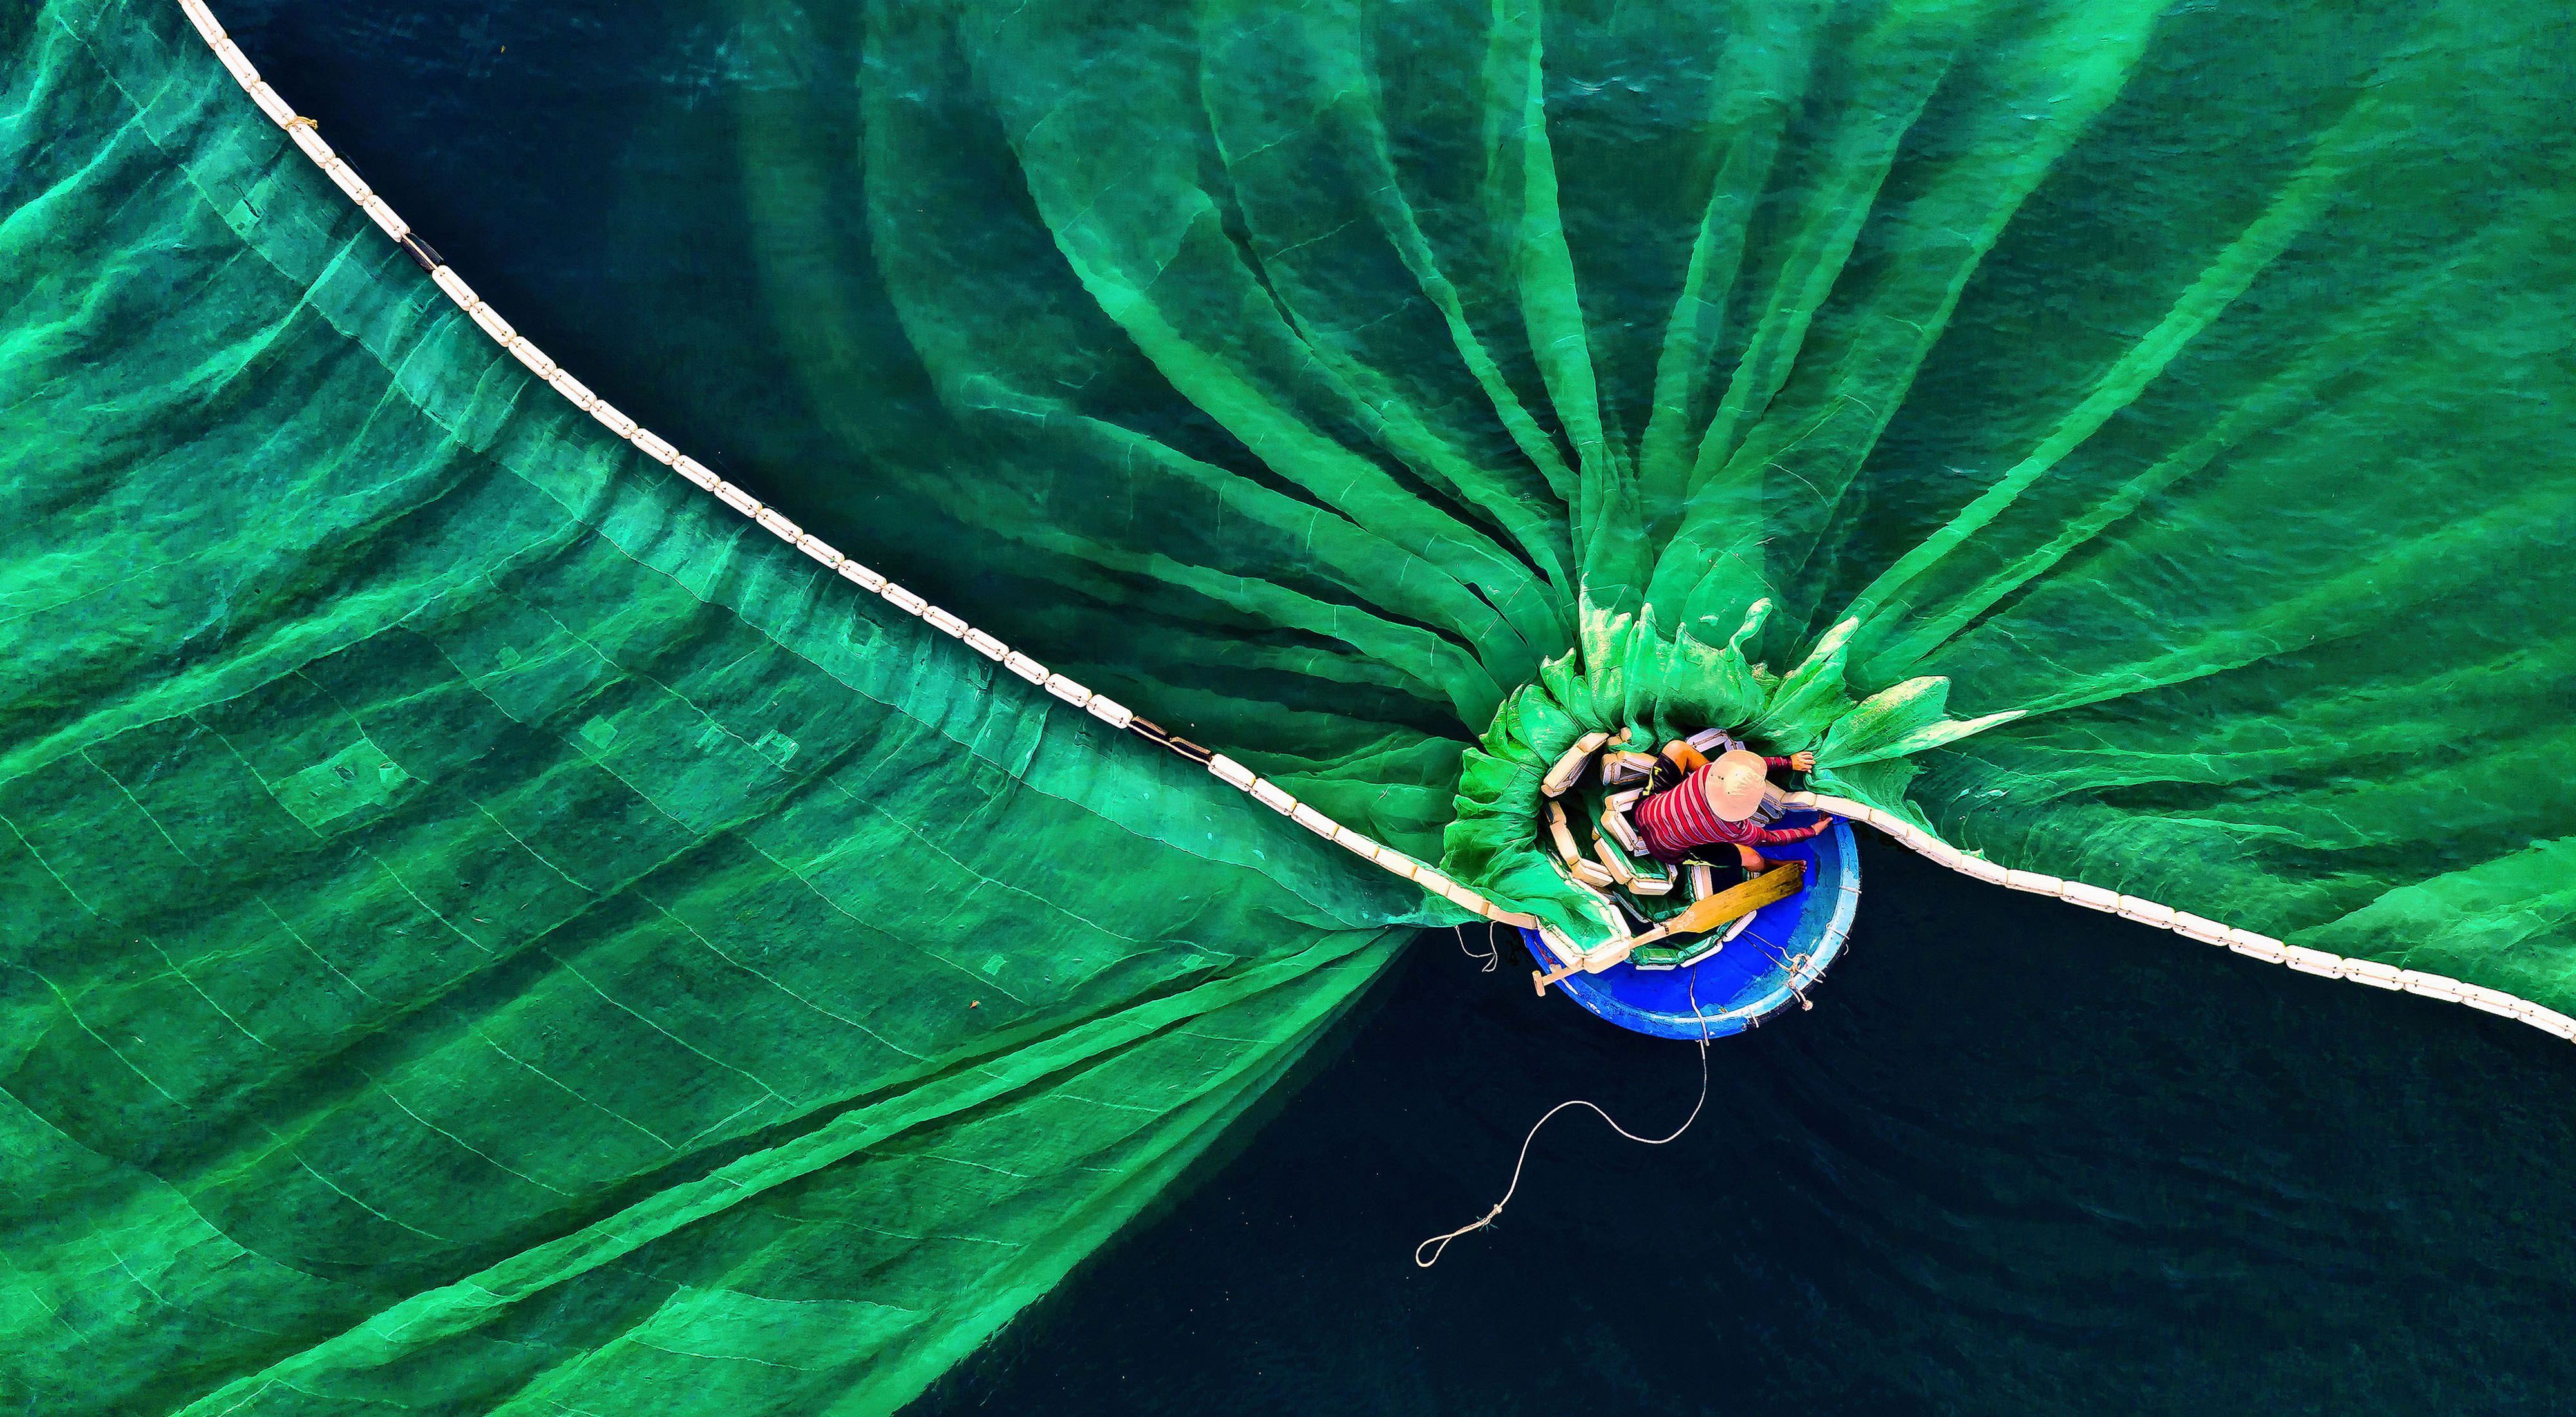 Pescador em Hon Yen, Phu Yen, Vietnã. Primeiro lugar na categoria Pessoas e Natureza no Concurso de Fotos da TNC de 2019.